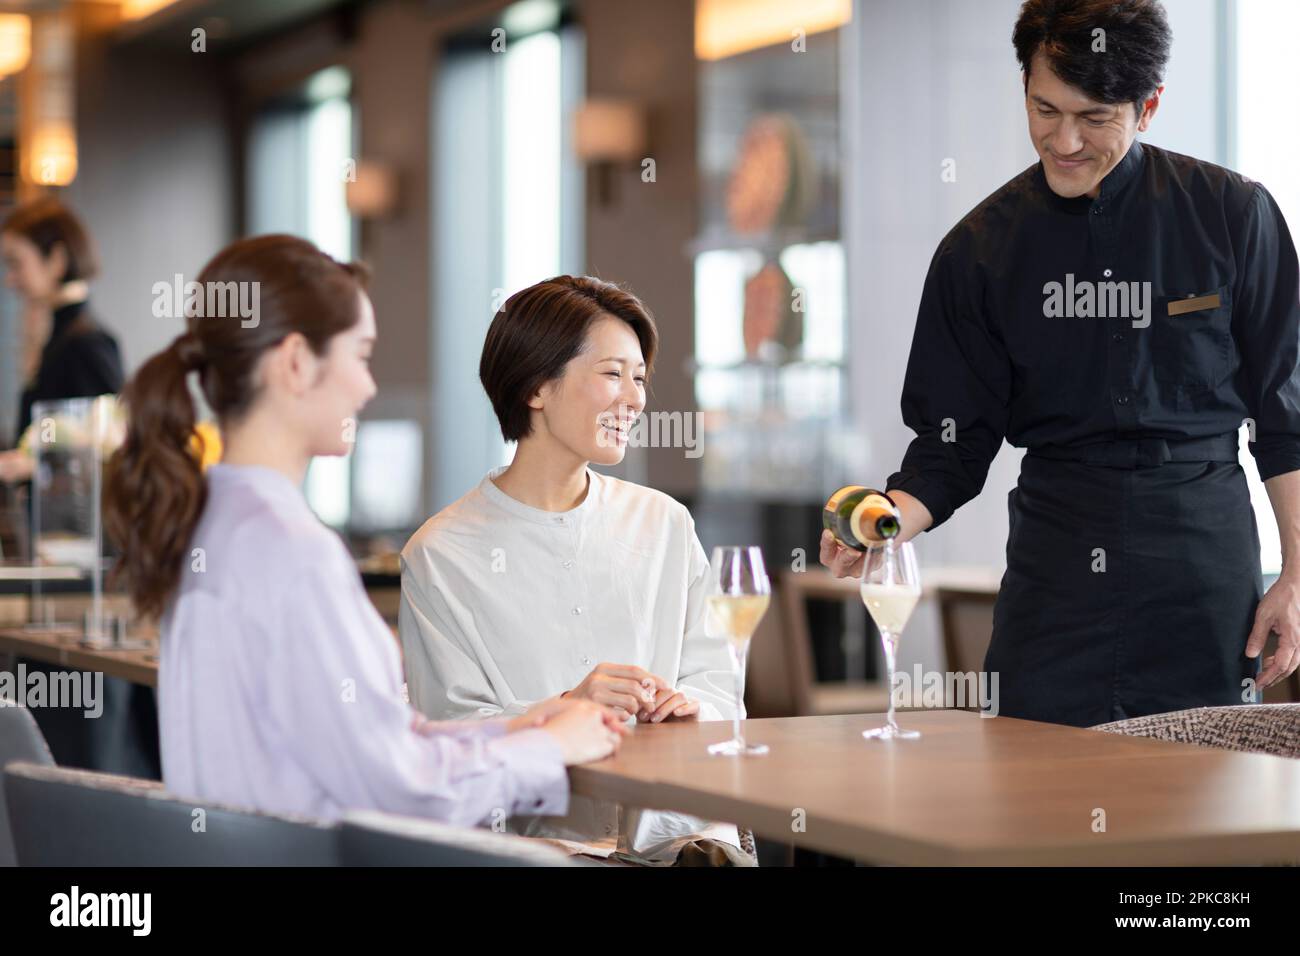 Das Personal im Restaurant schüttete Champagner ein Stockfoto